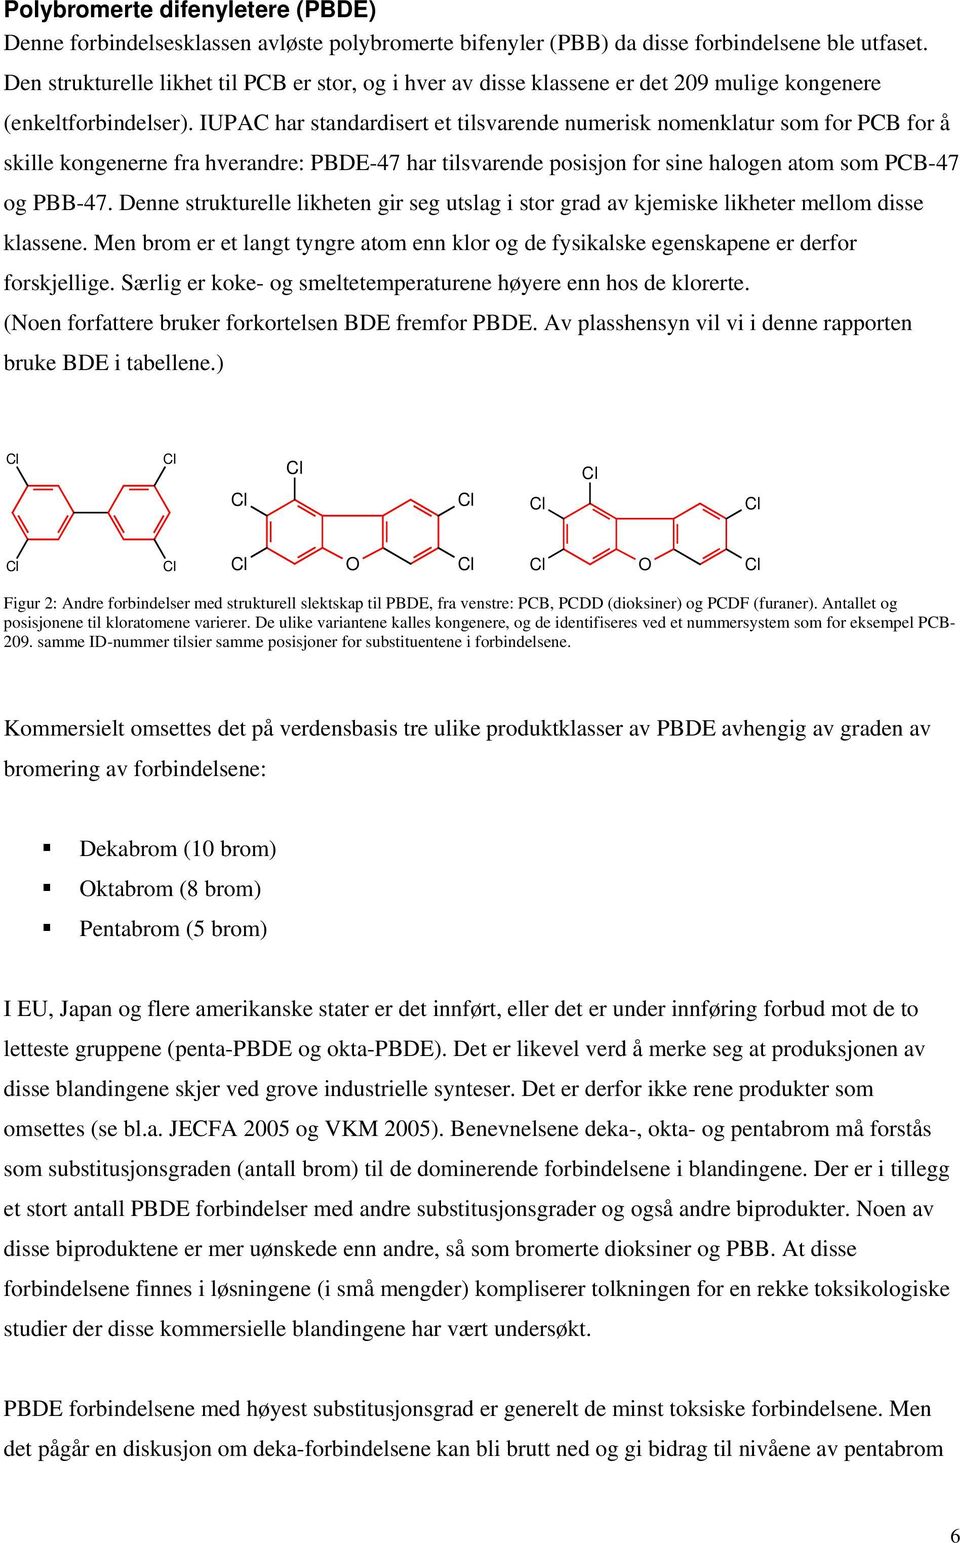 IUPAC har standardisert et tilsvarende numerisk nomenklatur som for PCB for å skille kongenerne fra hverandre: P-47 har tilsvarende posisjon for sine halogen atom som PCB-47 og PBB-47.